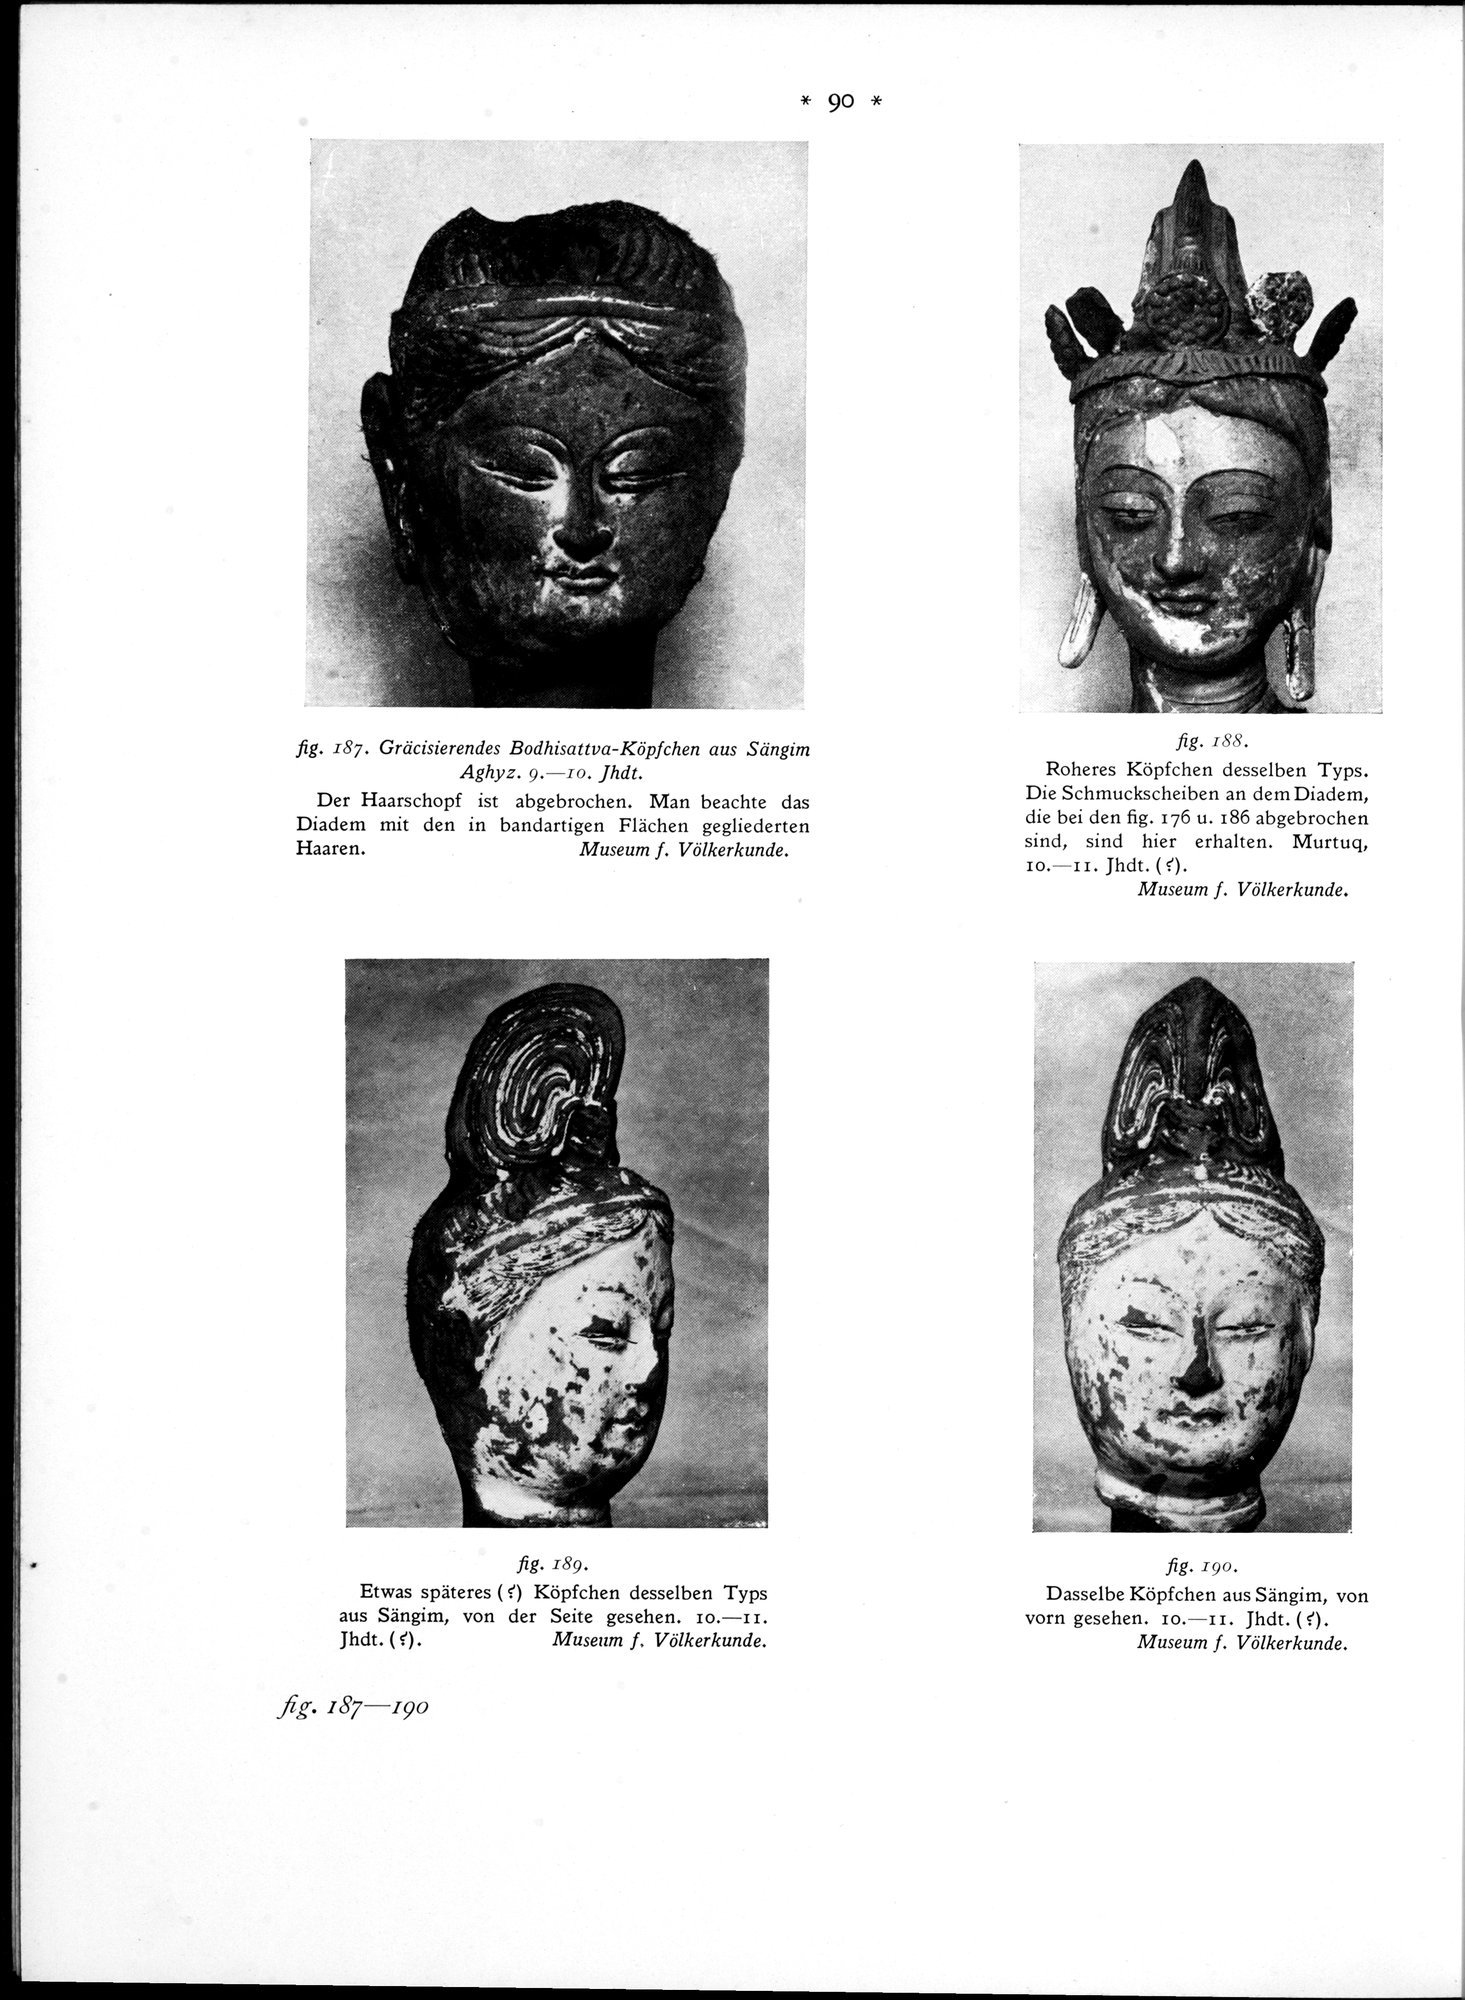 Bilderatlas zur Kunst und Kulturgeschichte Mittel-Asiens : vol.1 / Page 94 (Grayscale High Resolution Image)